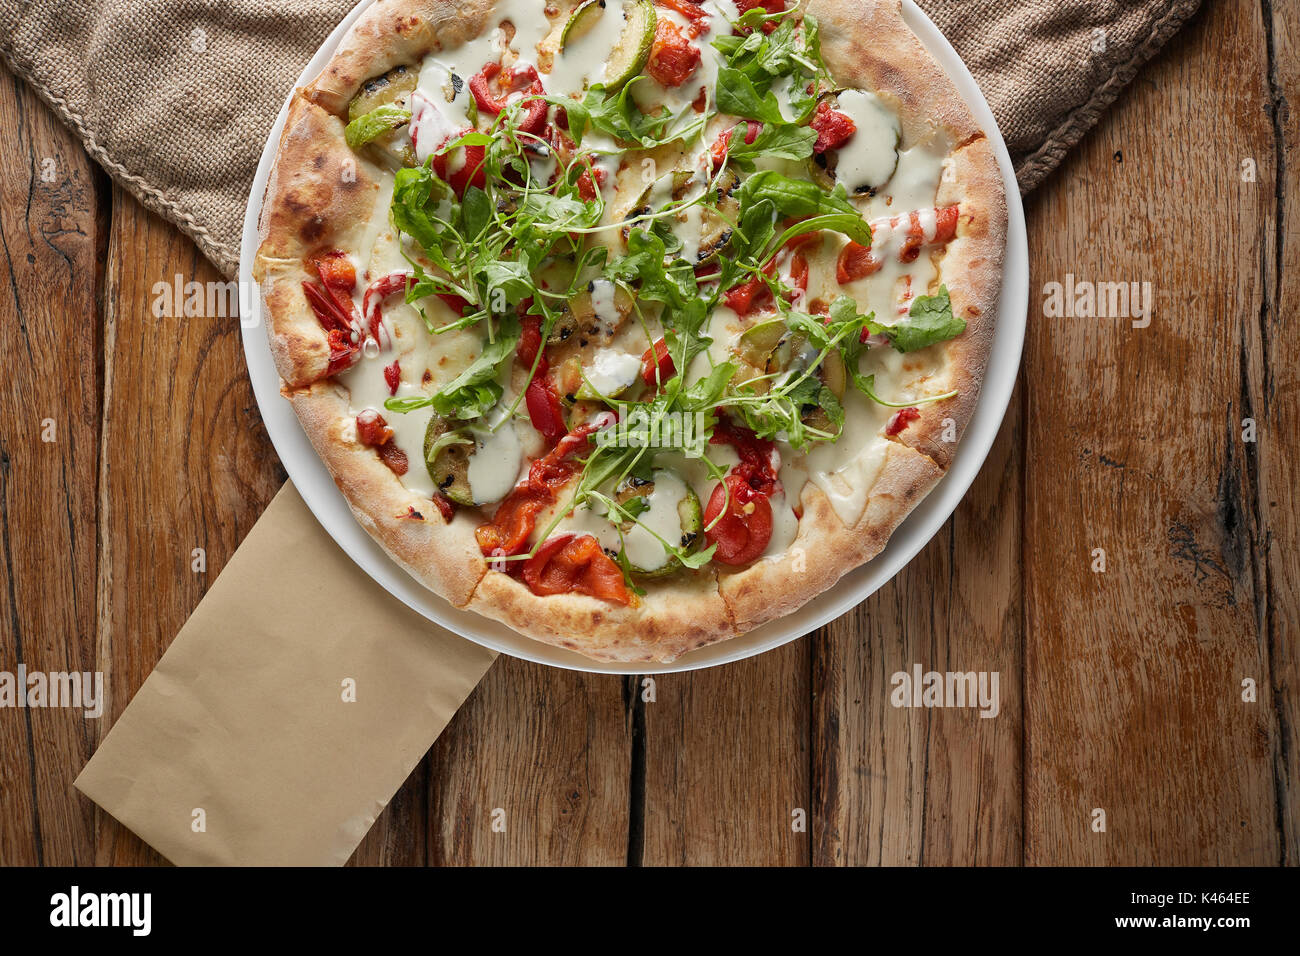 Oben Ansicht von Gerundeten große hausgemachte Pizza auf Weiß abgerundete Platte und Holz- Hintergrund. Leckere italienische Pizza mit Gemüse. Rote Paprika, Papier, Tomate Stockfoto